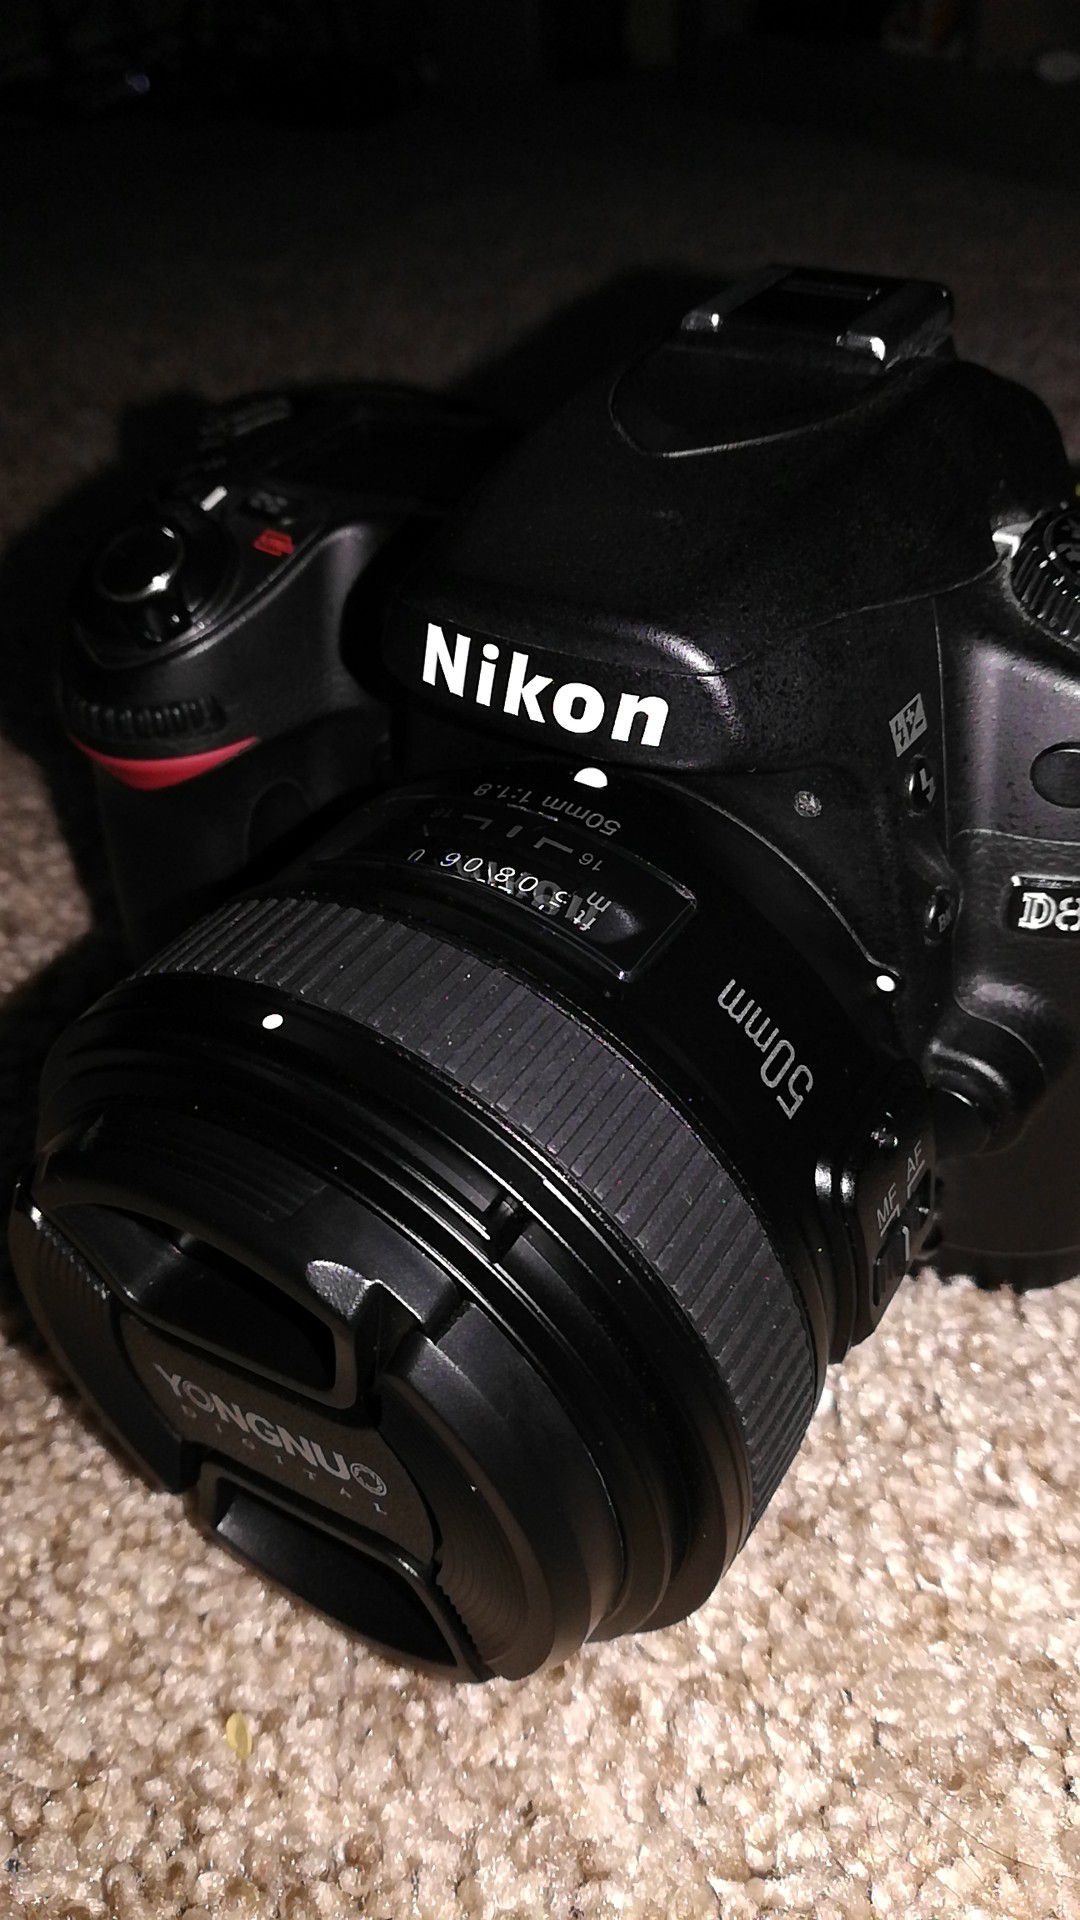 Nikon D80 DSLR Camera